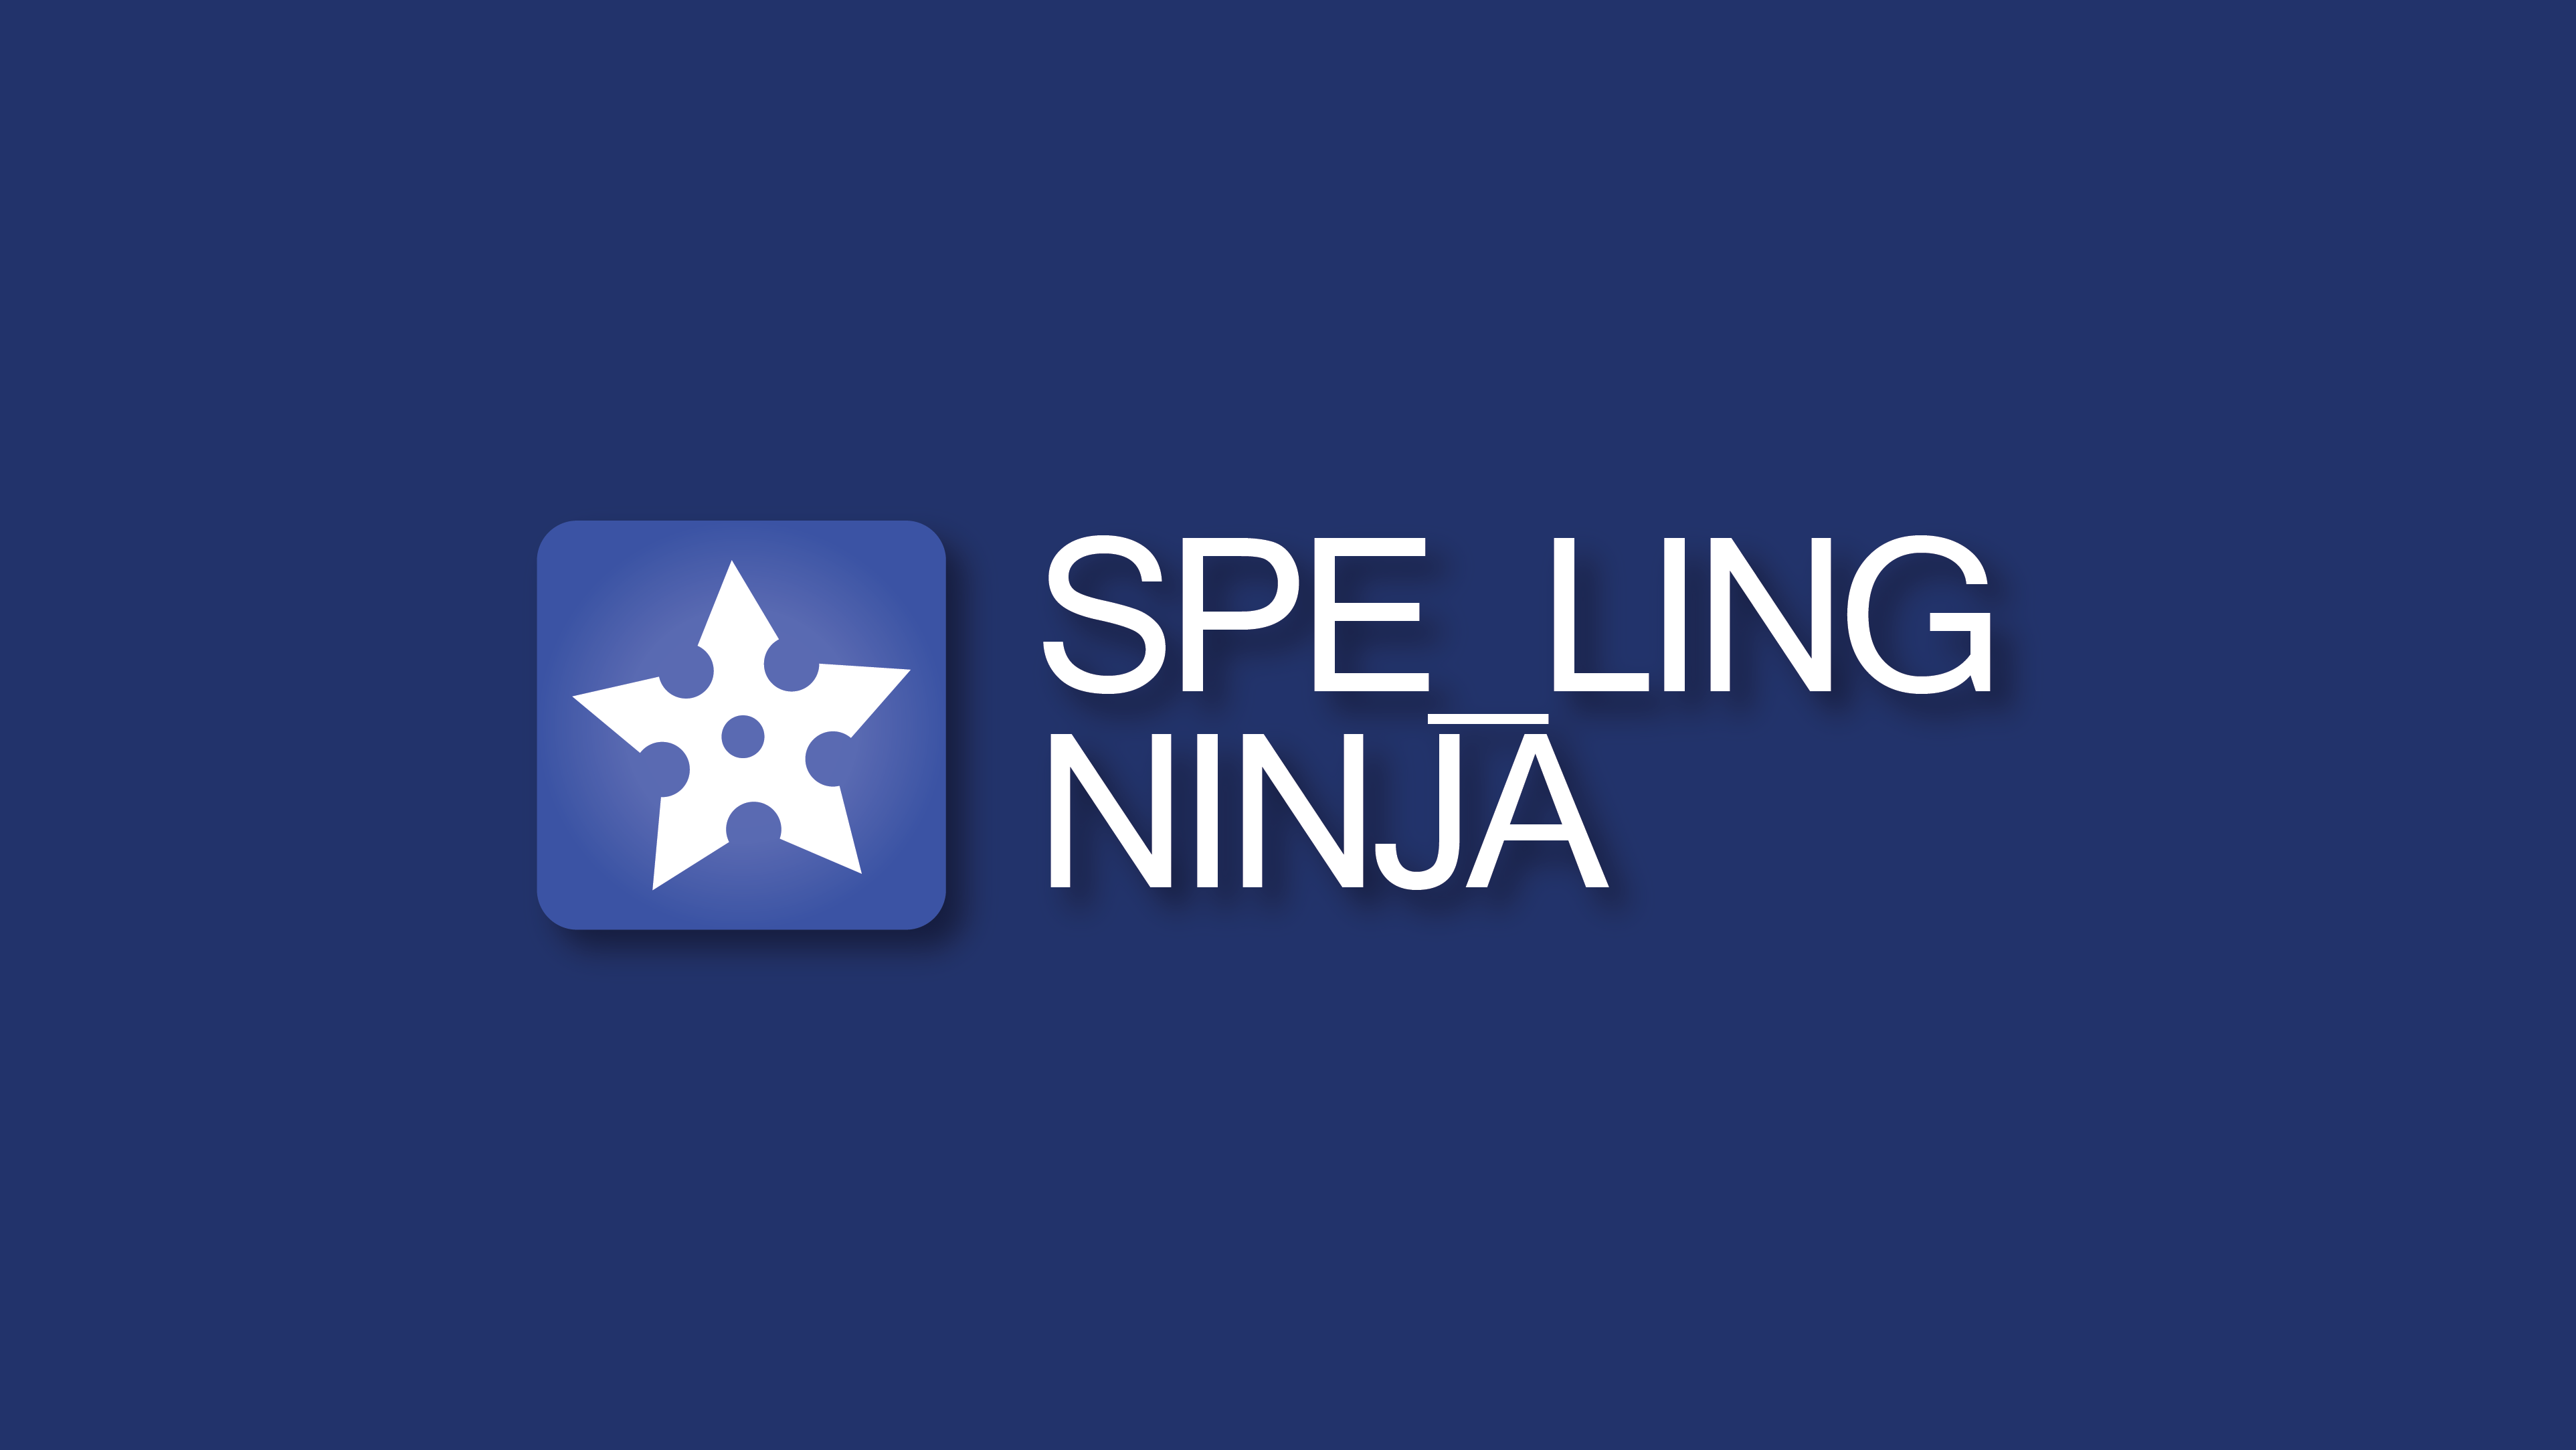 Spelling Ninja logo